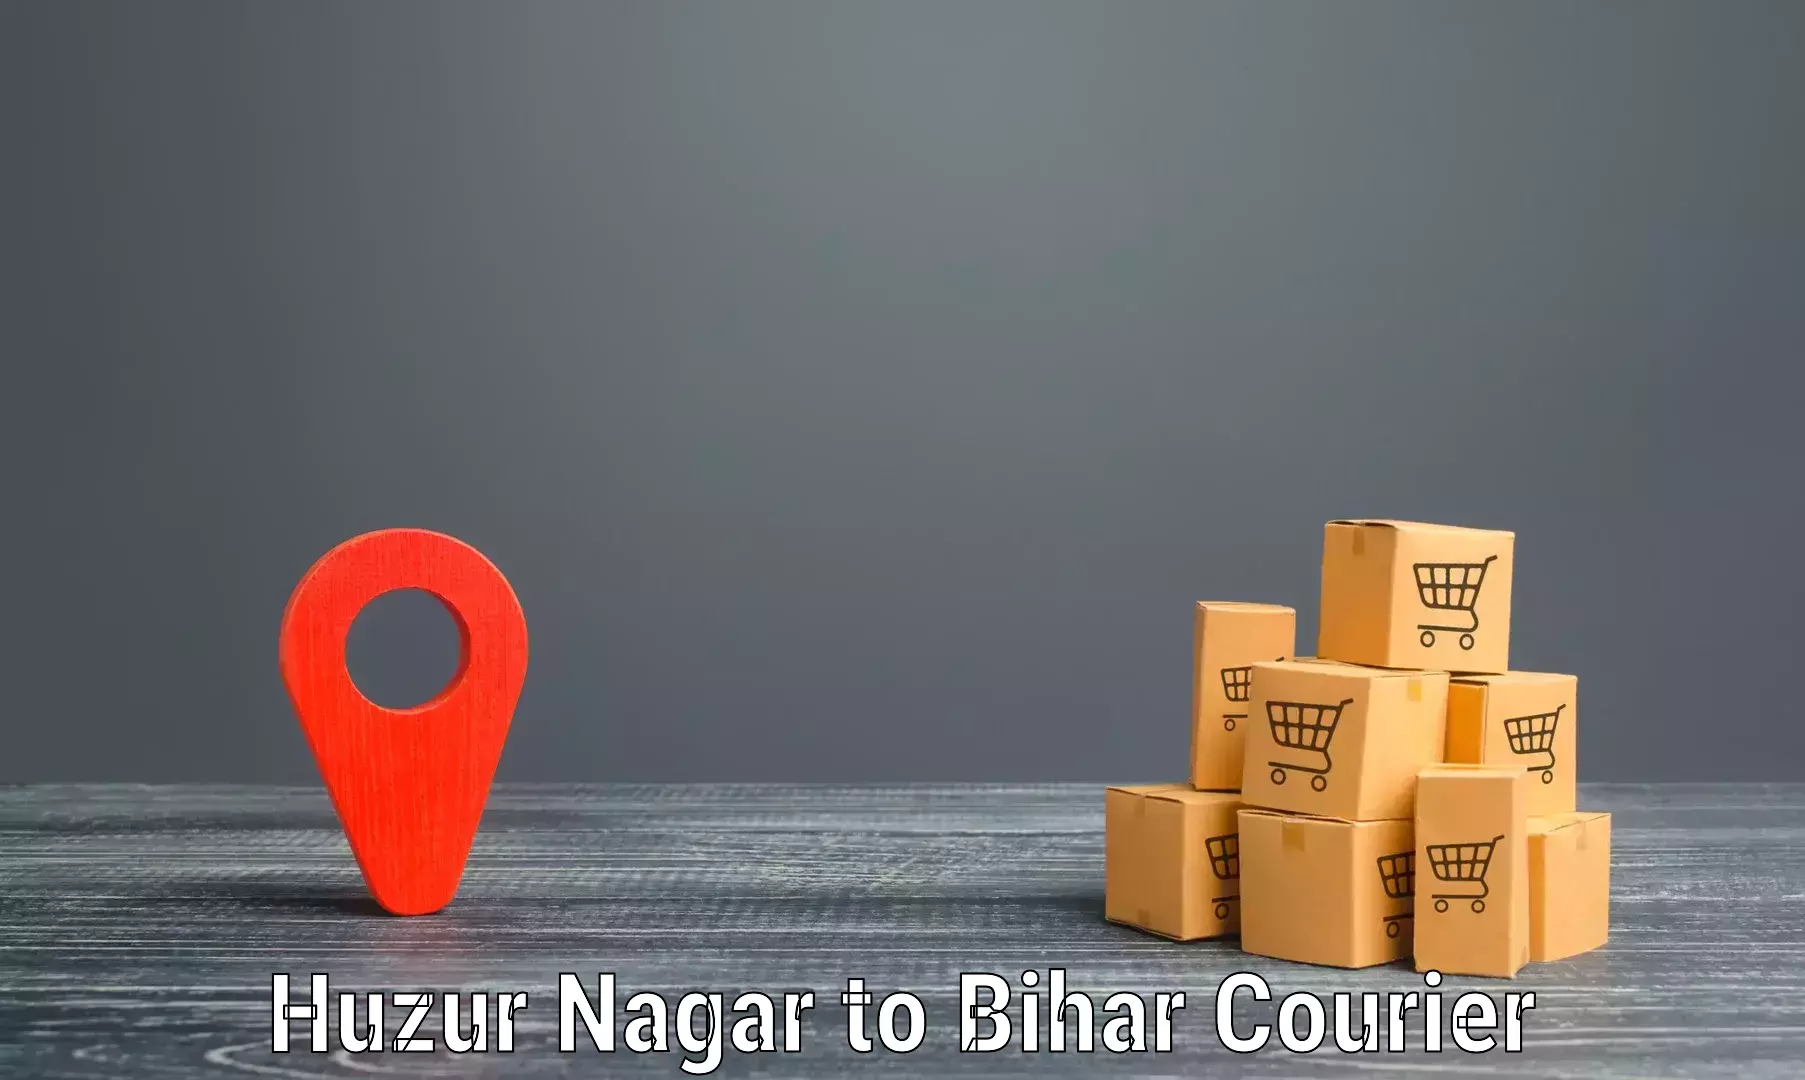 Rapid freight solutions Huzur Nagar to Kishunganj